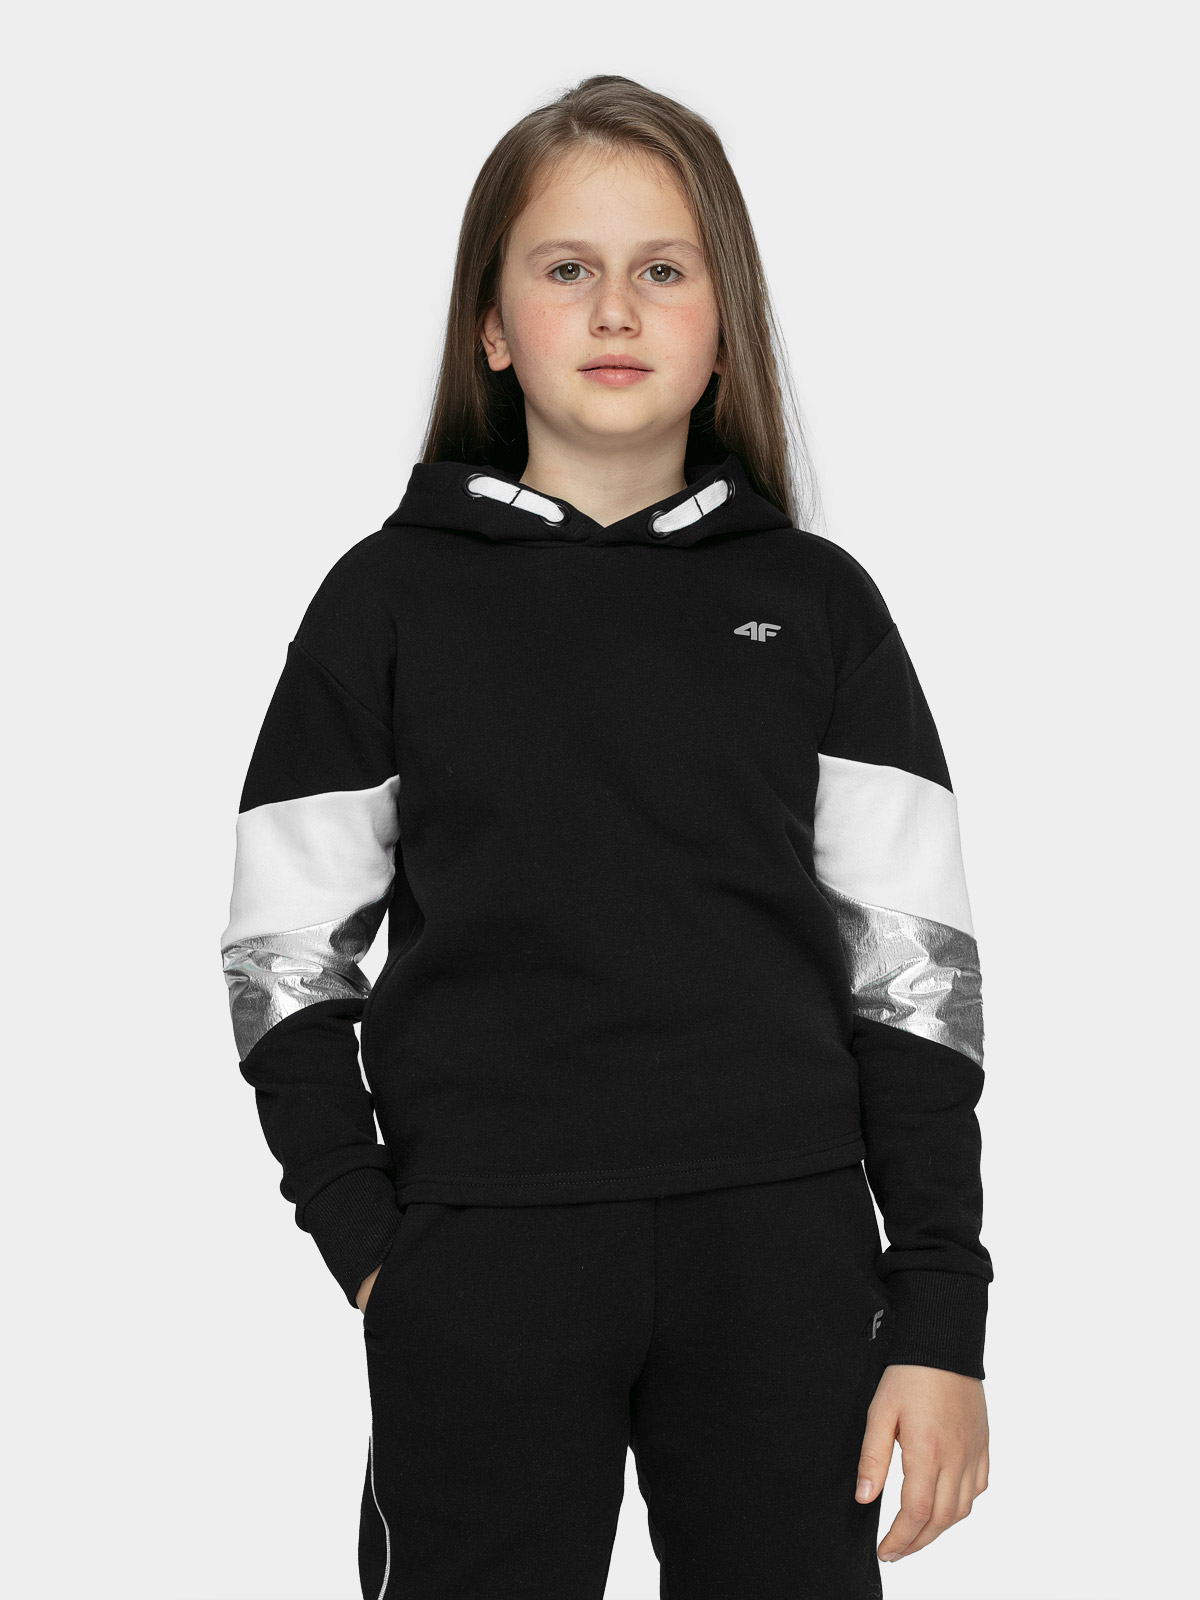 фото Худи 4f girl's sweatshirts hjz21-jbld005a-20s цв.черный р. 164